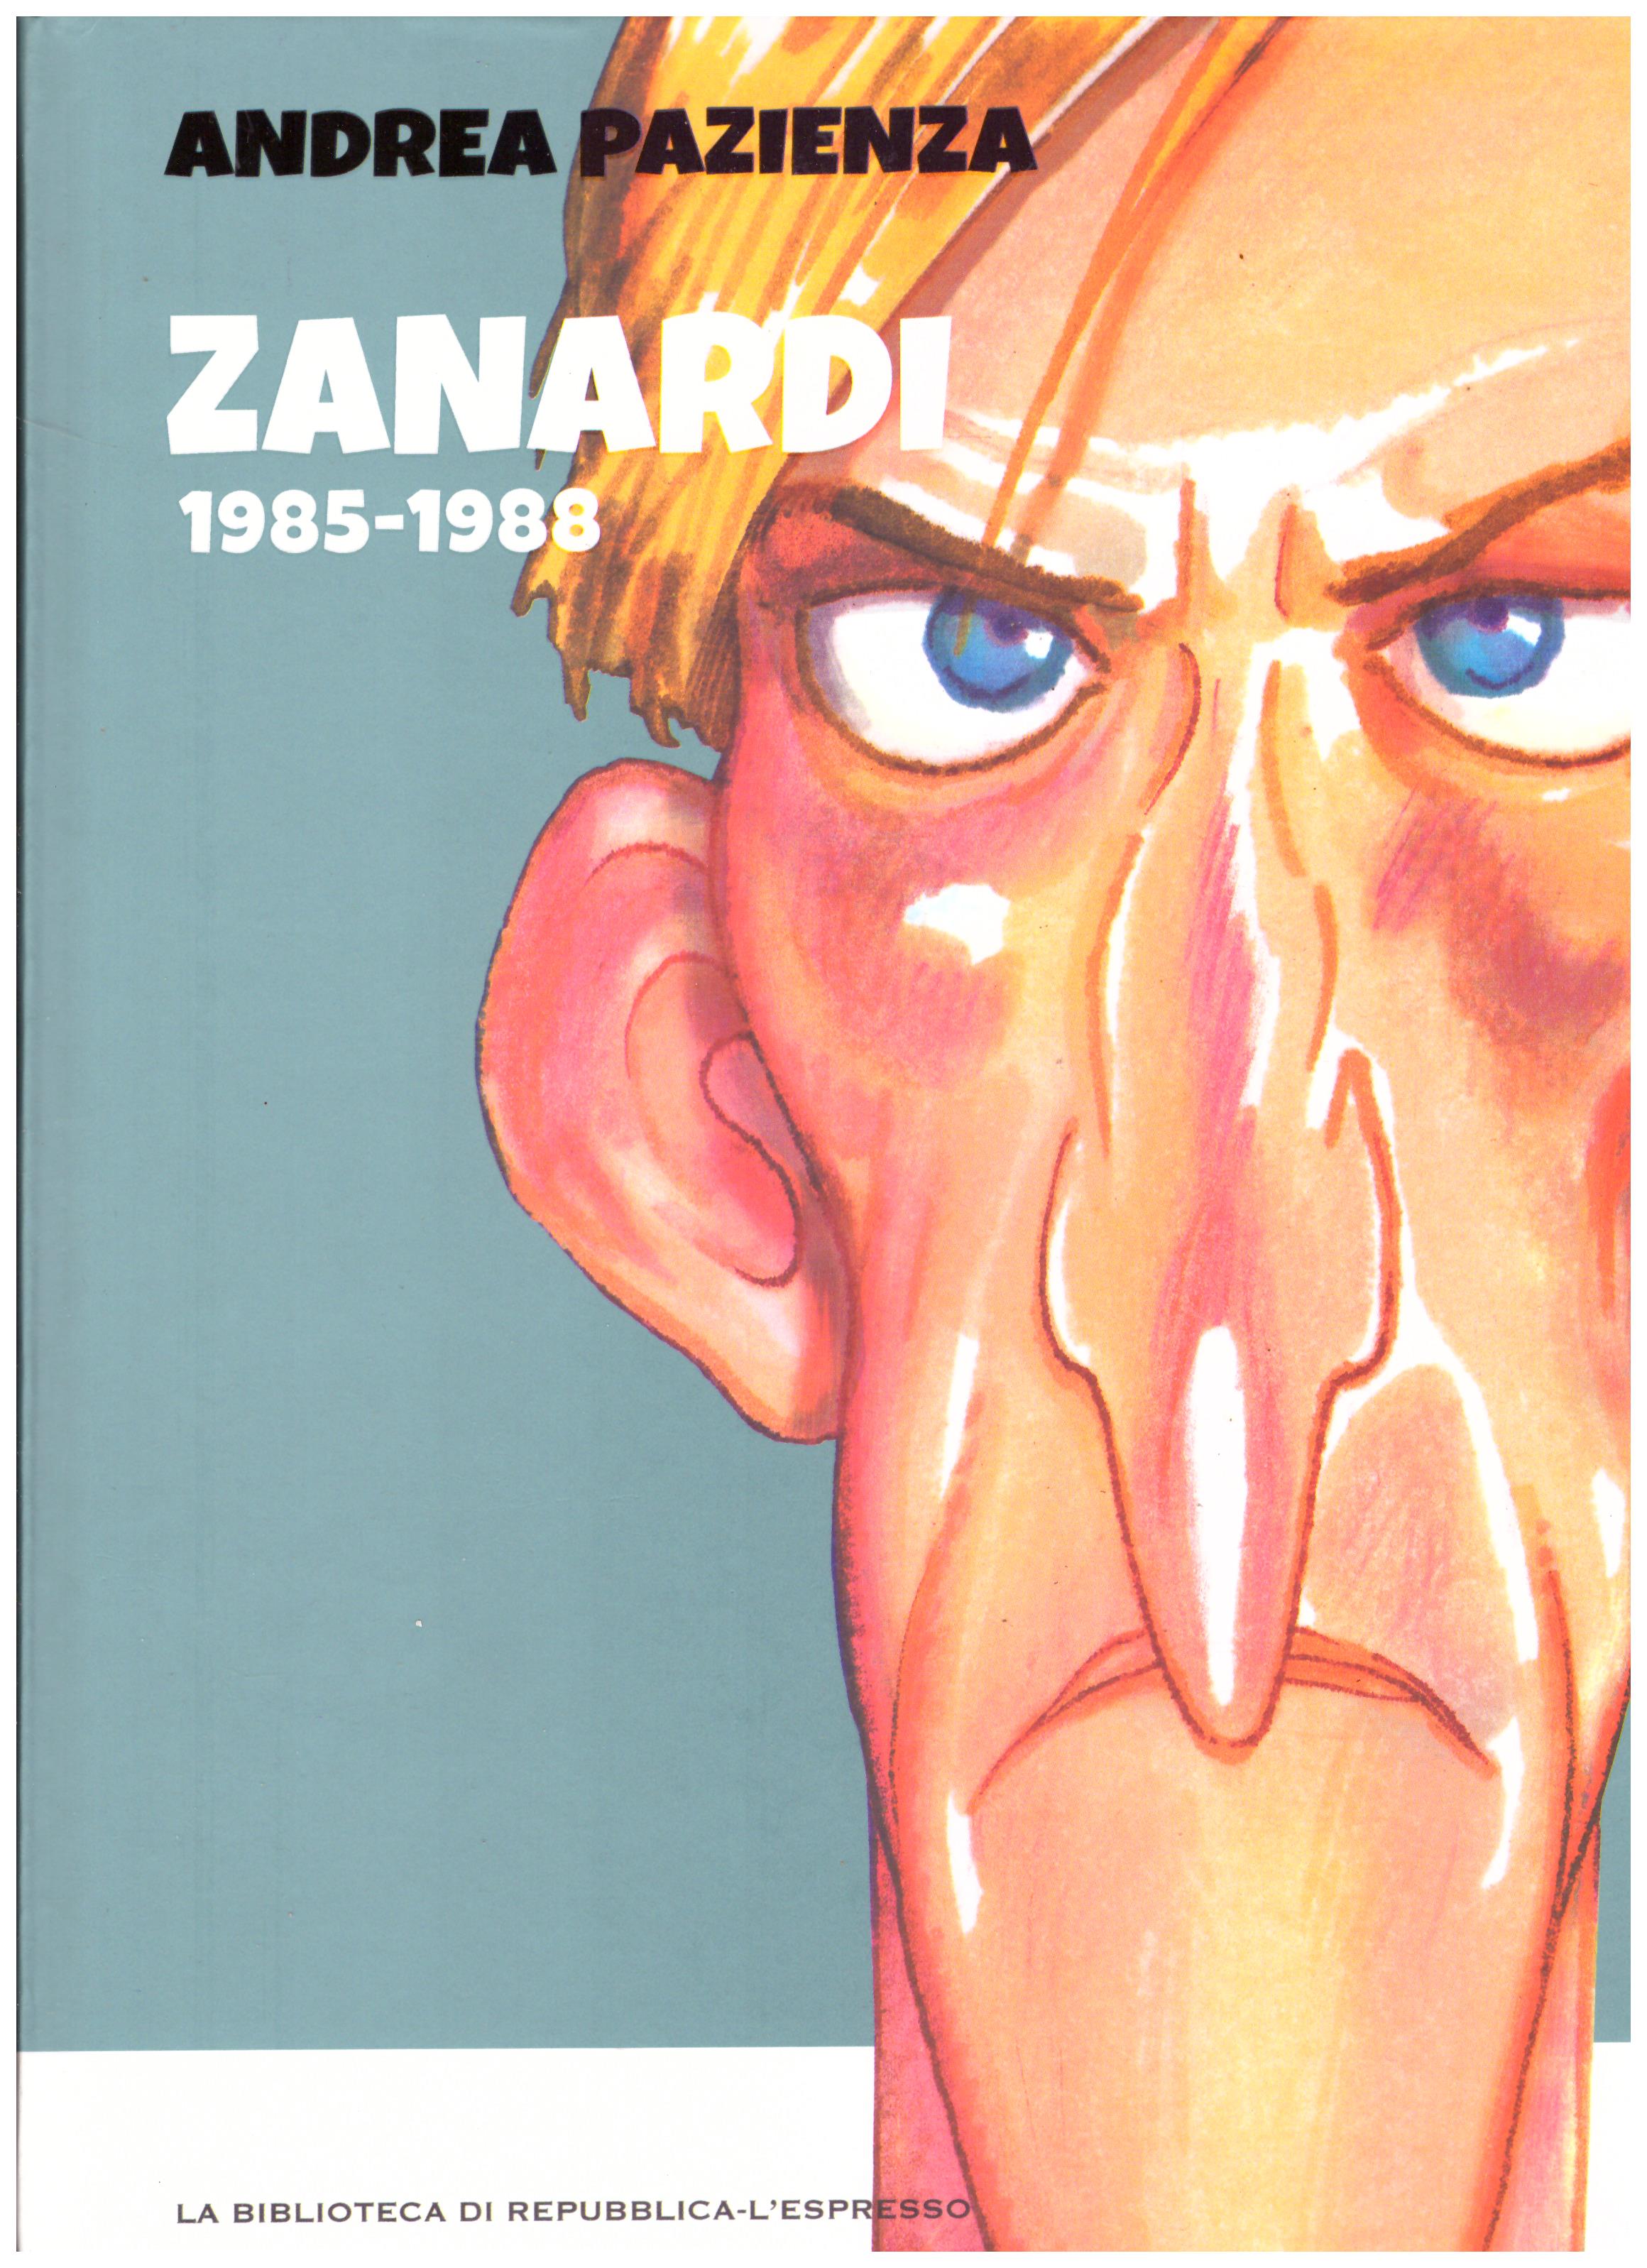 Titolo: Zanardi 1985-1988 Autore: Andrea Pazienza  Editore: biblioteca di repubblica-l'espresso, 2016